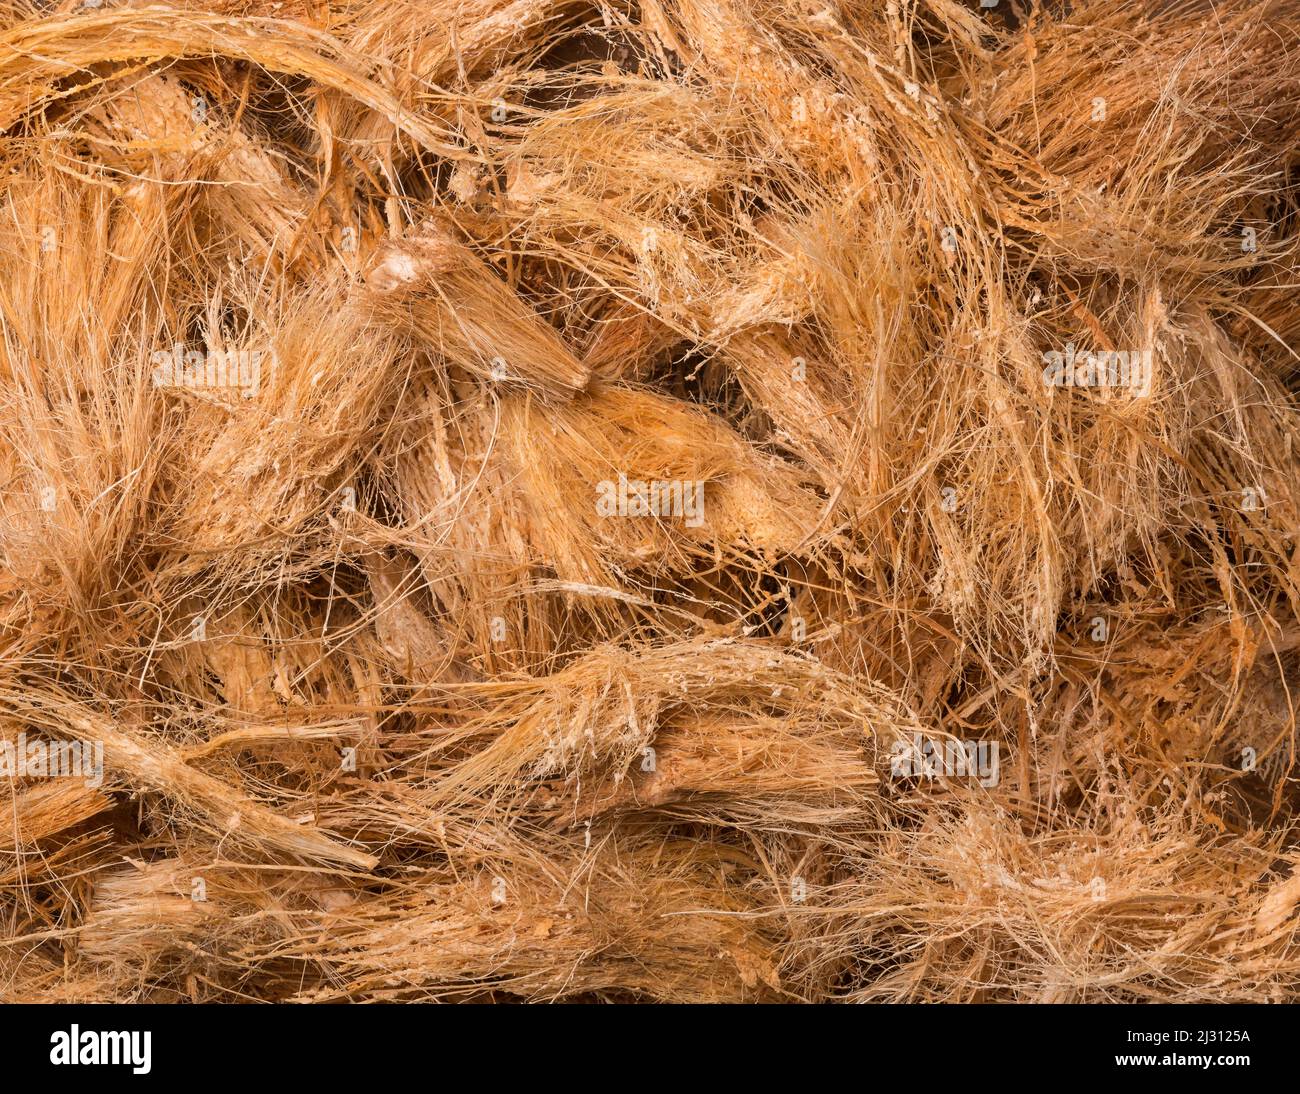 Kokosnussschalen-Faser oder Kokos, kommerziell wichtige natürliche Faser, die aus der äußeren Schale von Kokosnussfrüchten gewonnen wird, von oben genommen, Hintergrundtextur Stockfoto